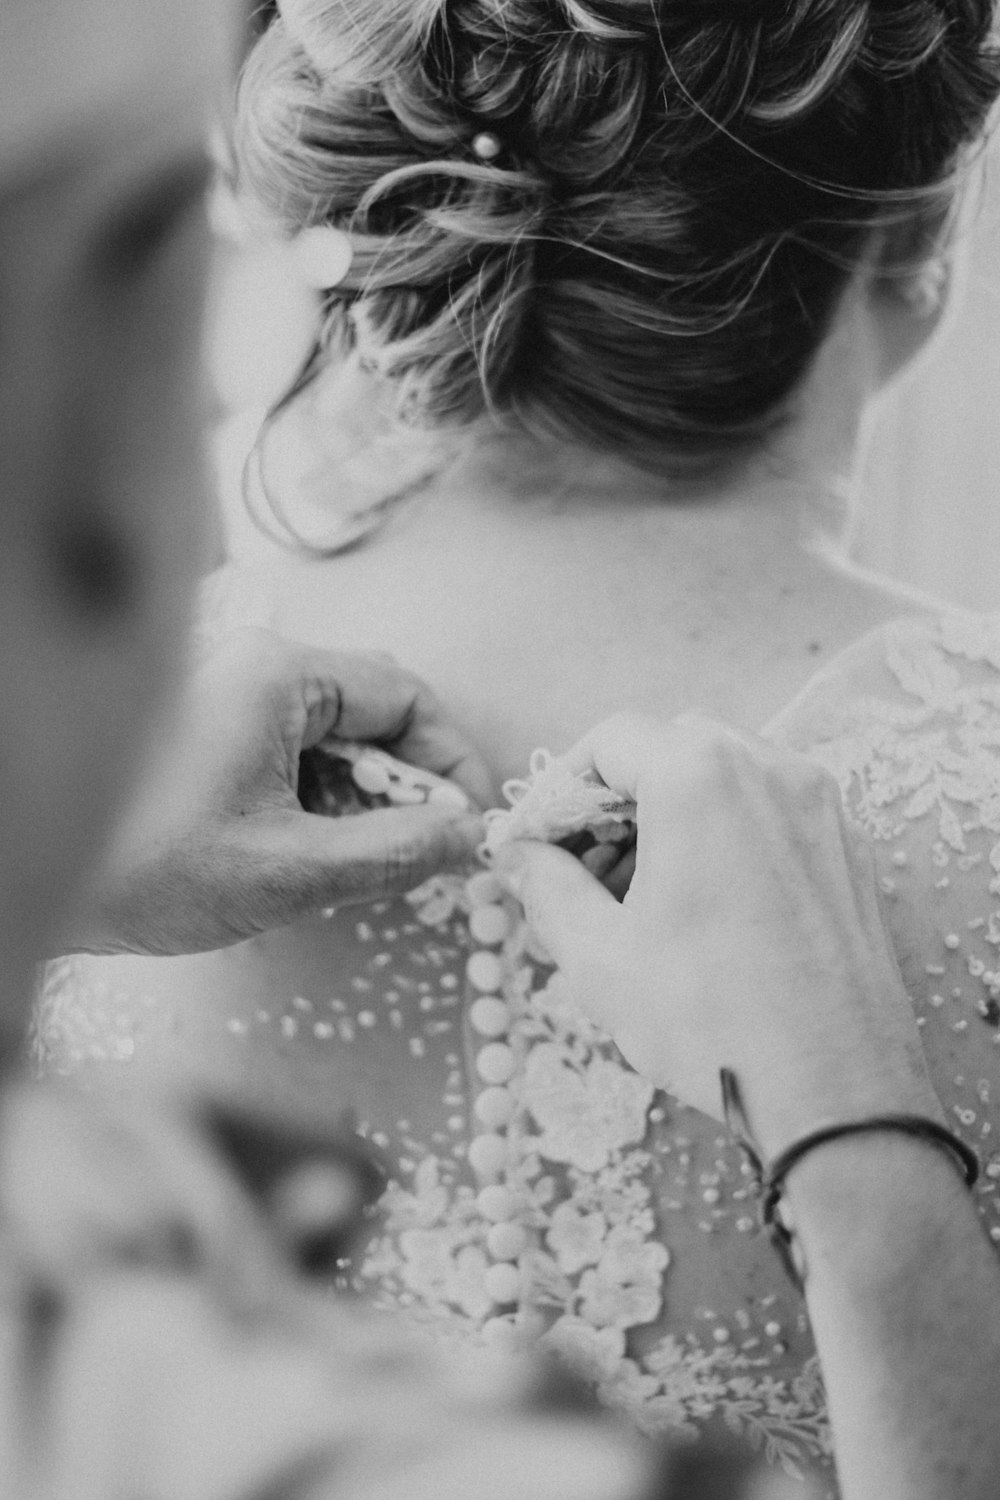 a woman in a wedding dress getting ready